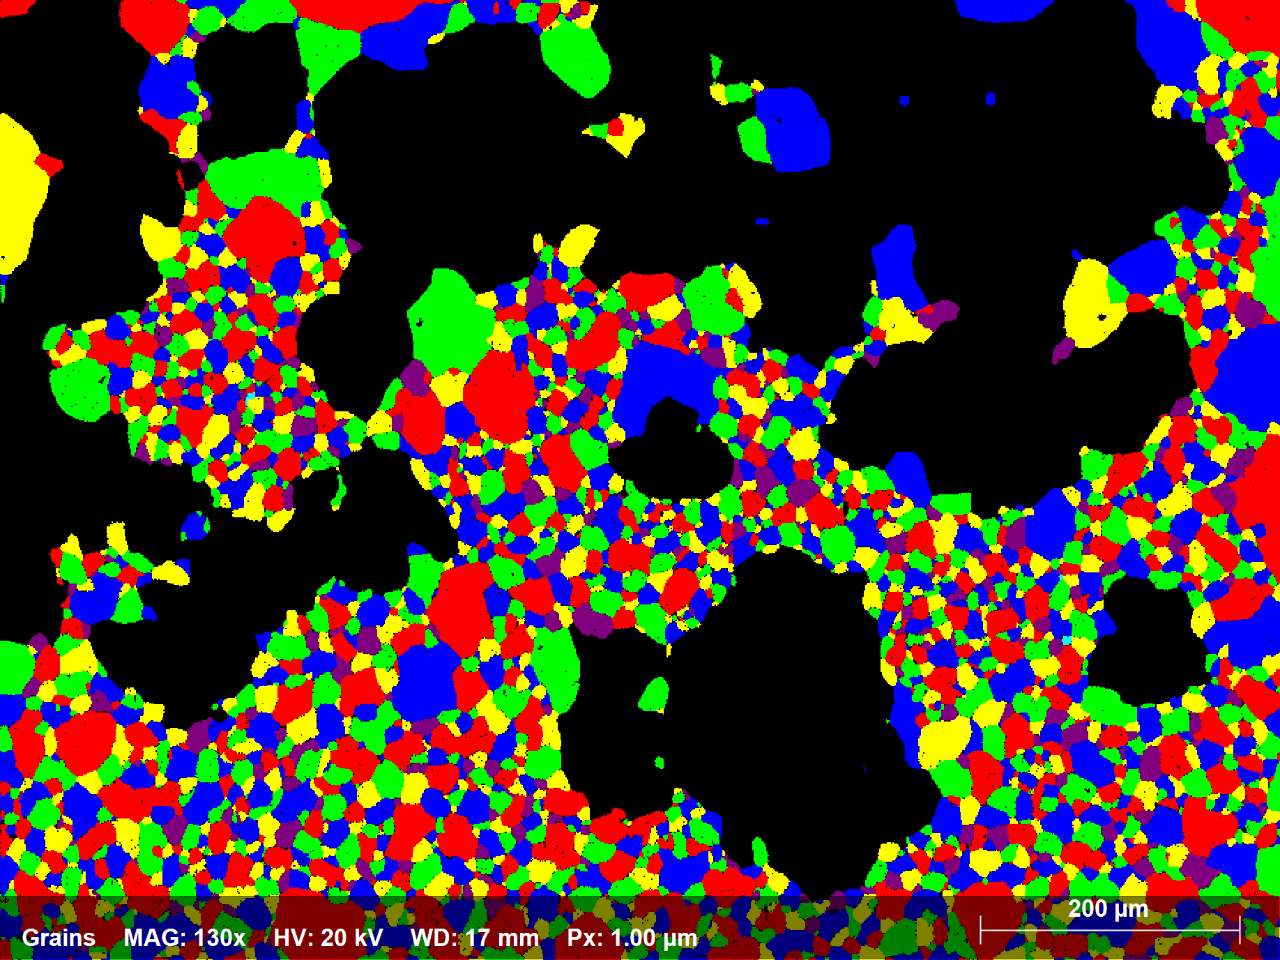 図1.4：70ミクロン未満の直径を持つすべての粒をランダムな色で示すNi合金EBSDマップのサブセット。2250粒がマップエリアの58%を占めます。